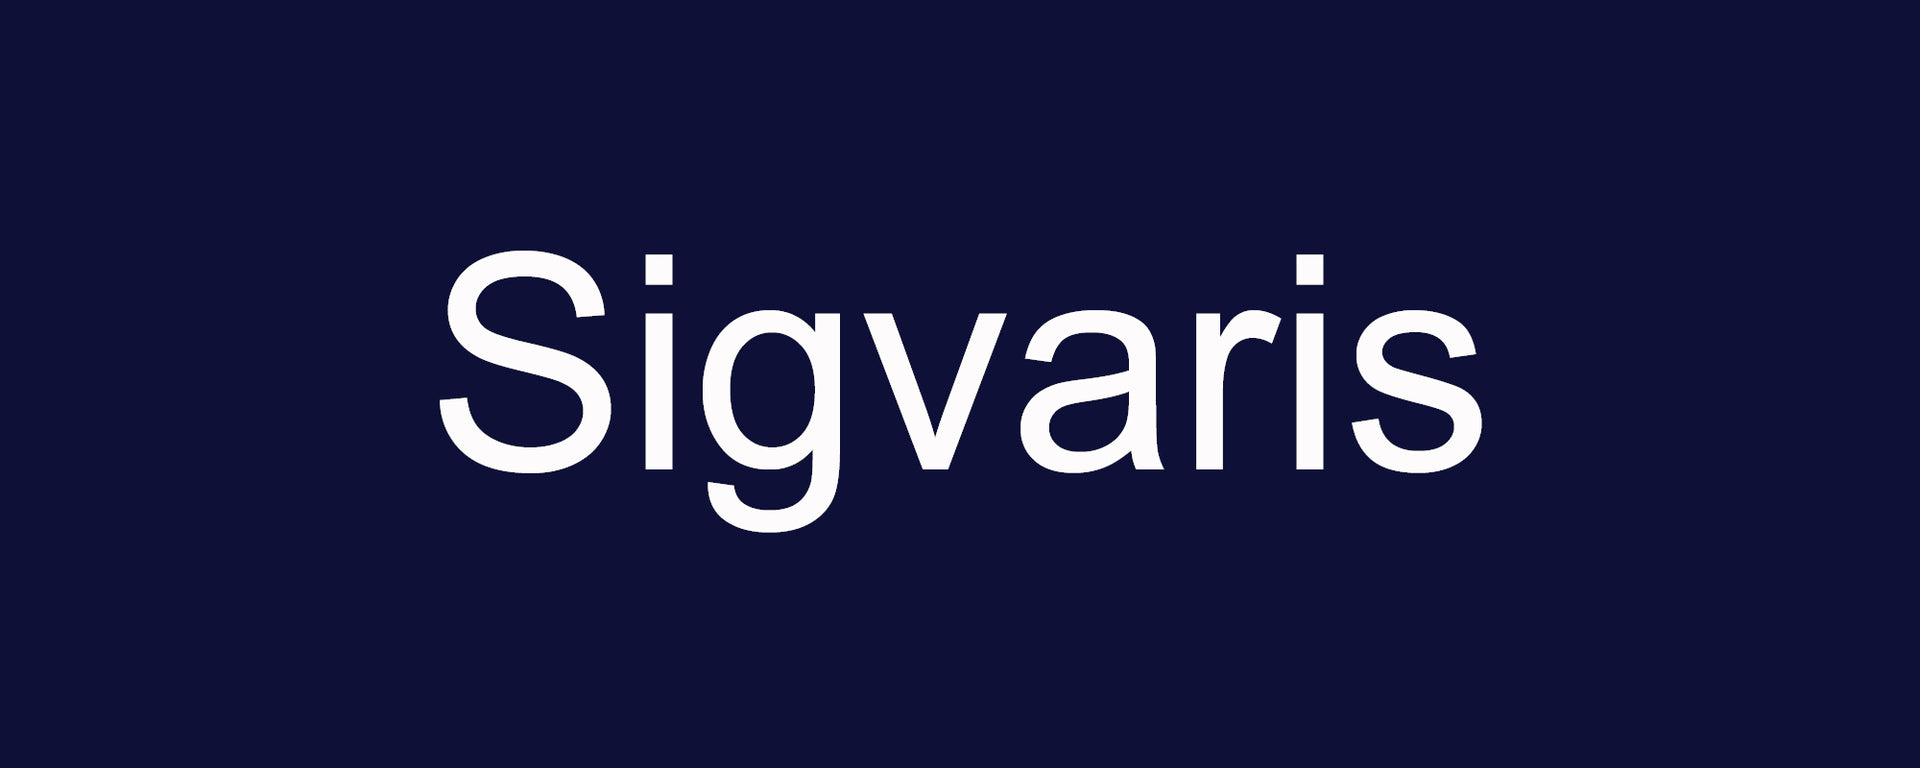 Sigvaris - Bannière Avec Fond Bleu Marin Et Texte En Blanc